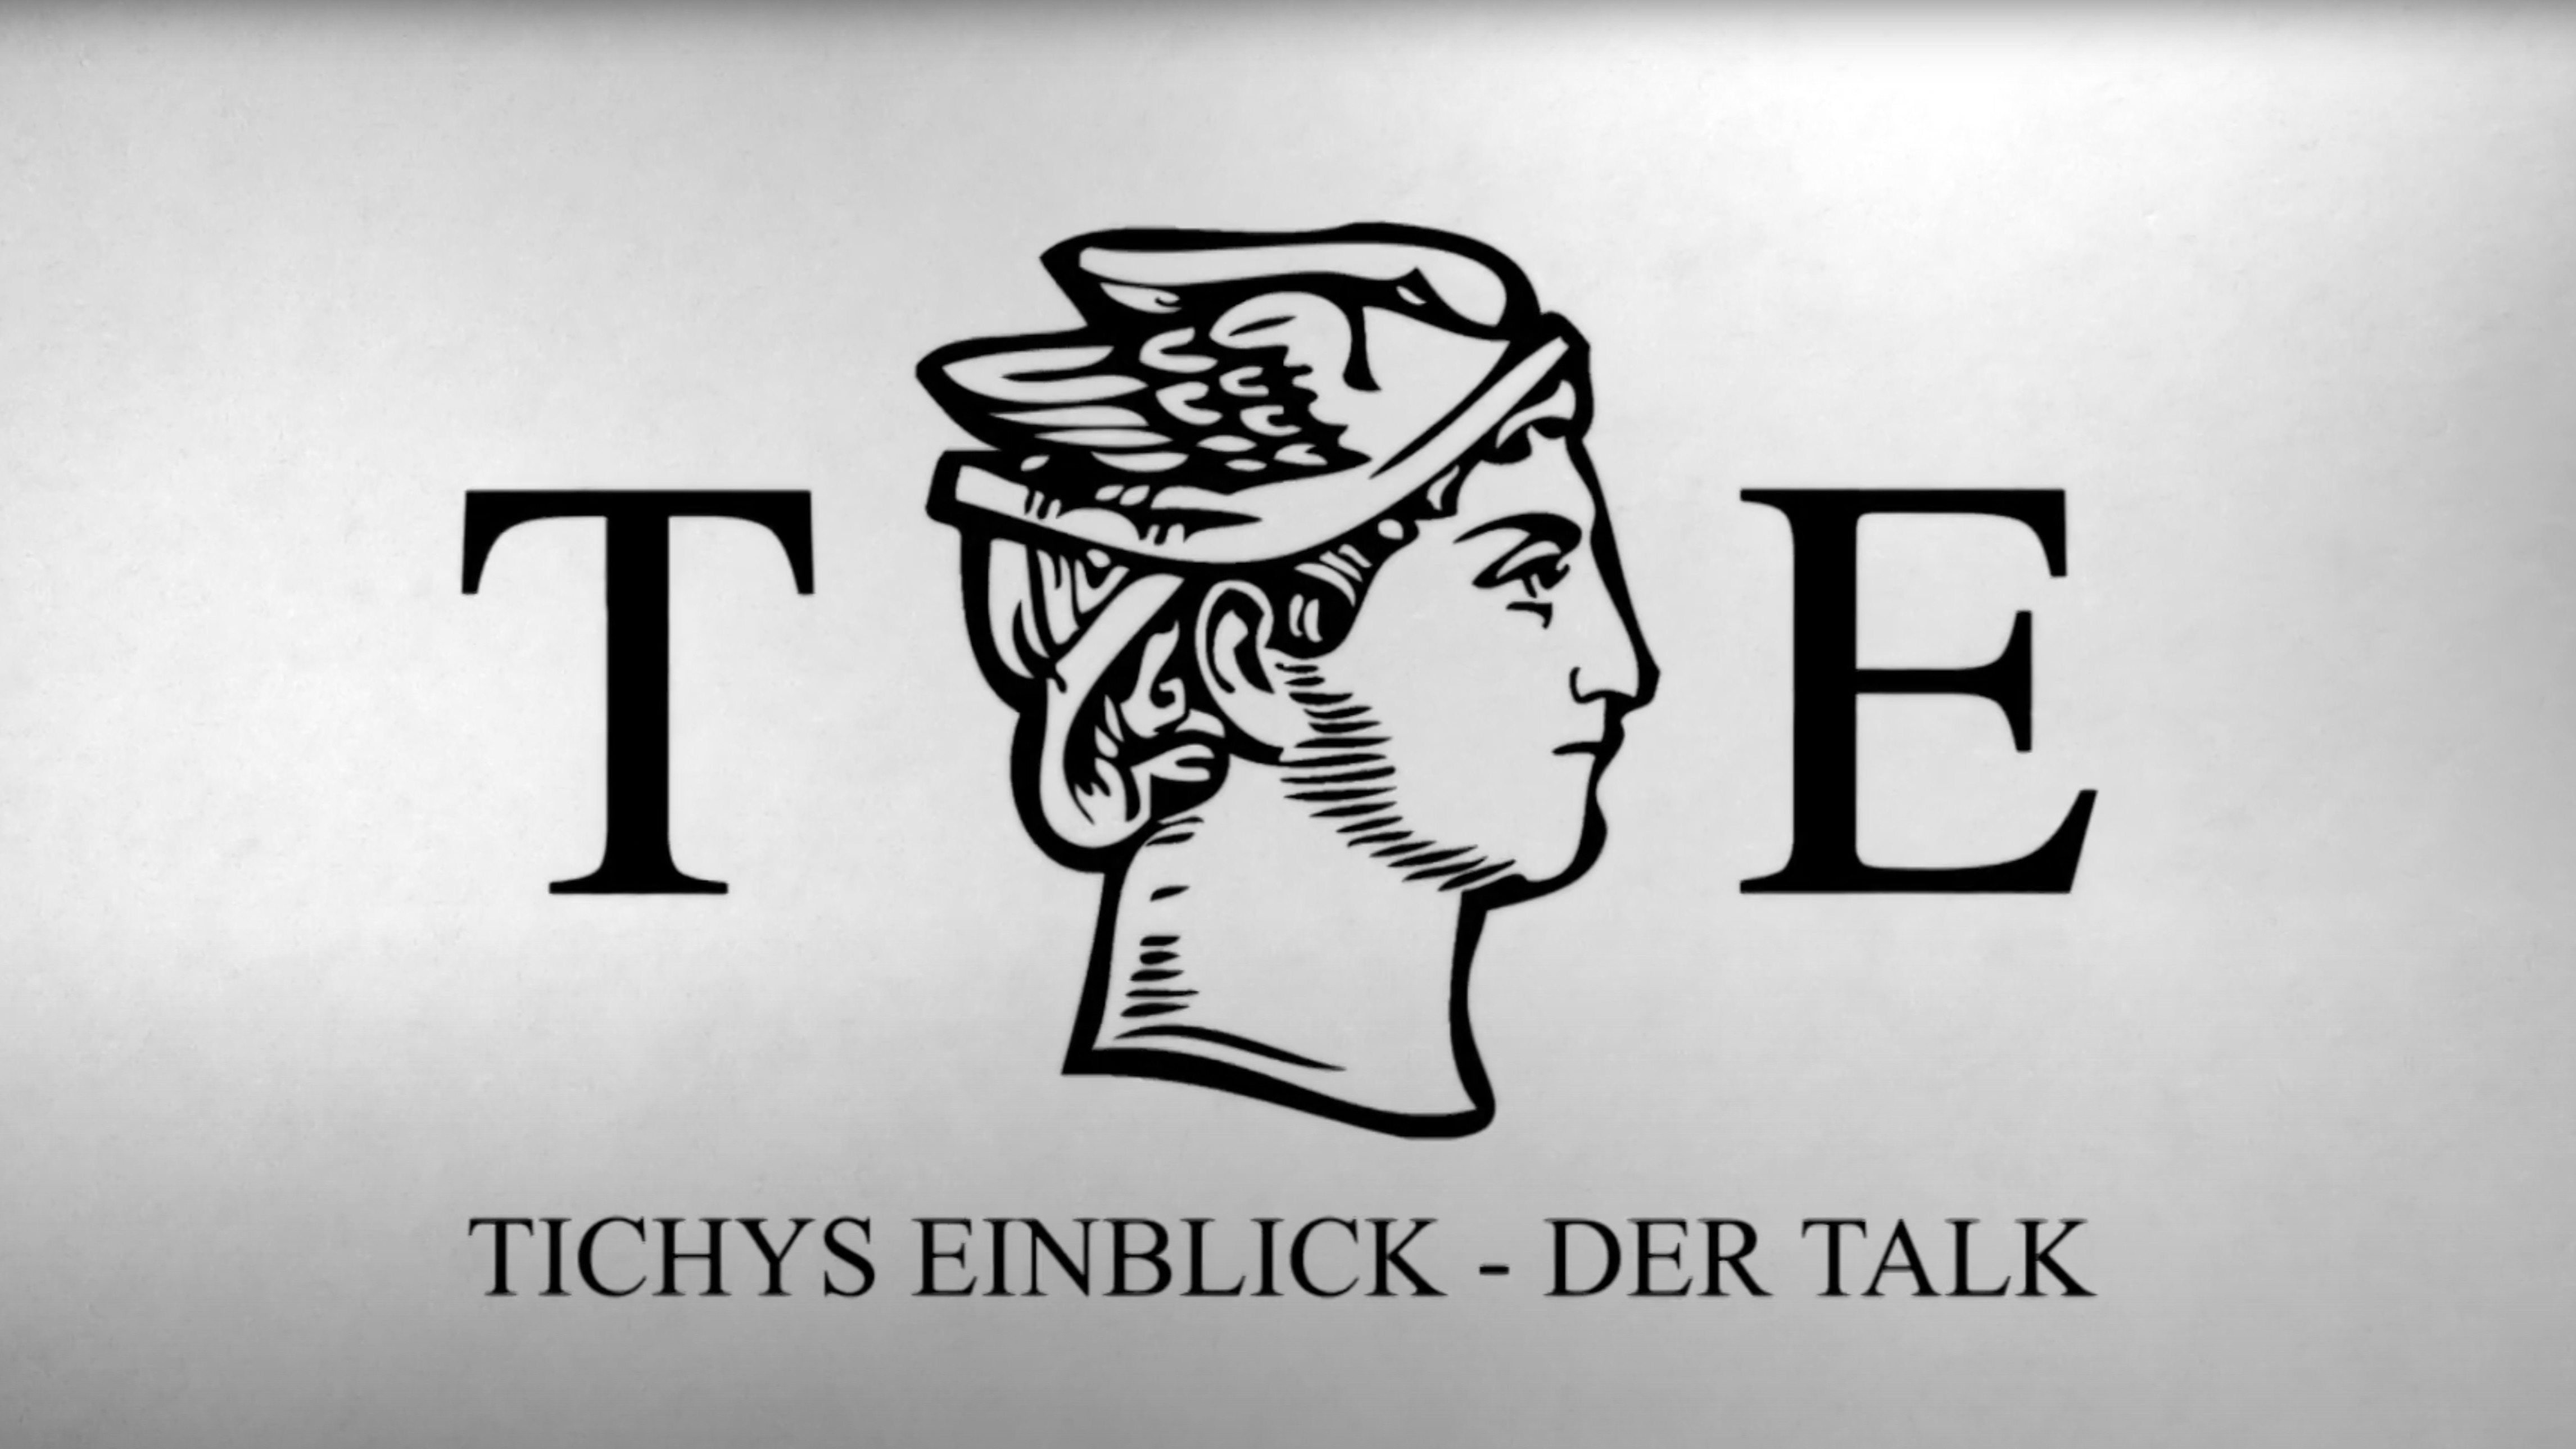 Tichys Einblick - Der Talk (Rainer Langhans trifft Michael Ballweg)